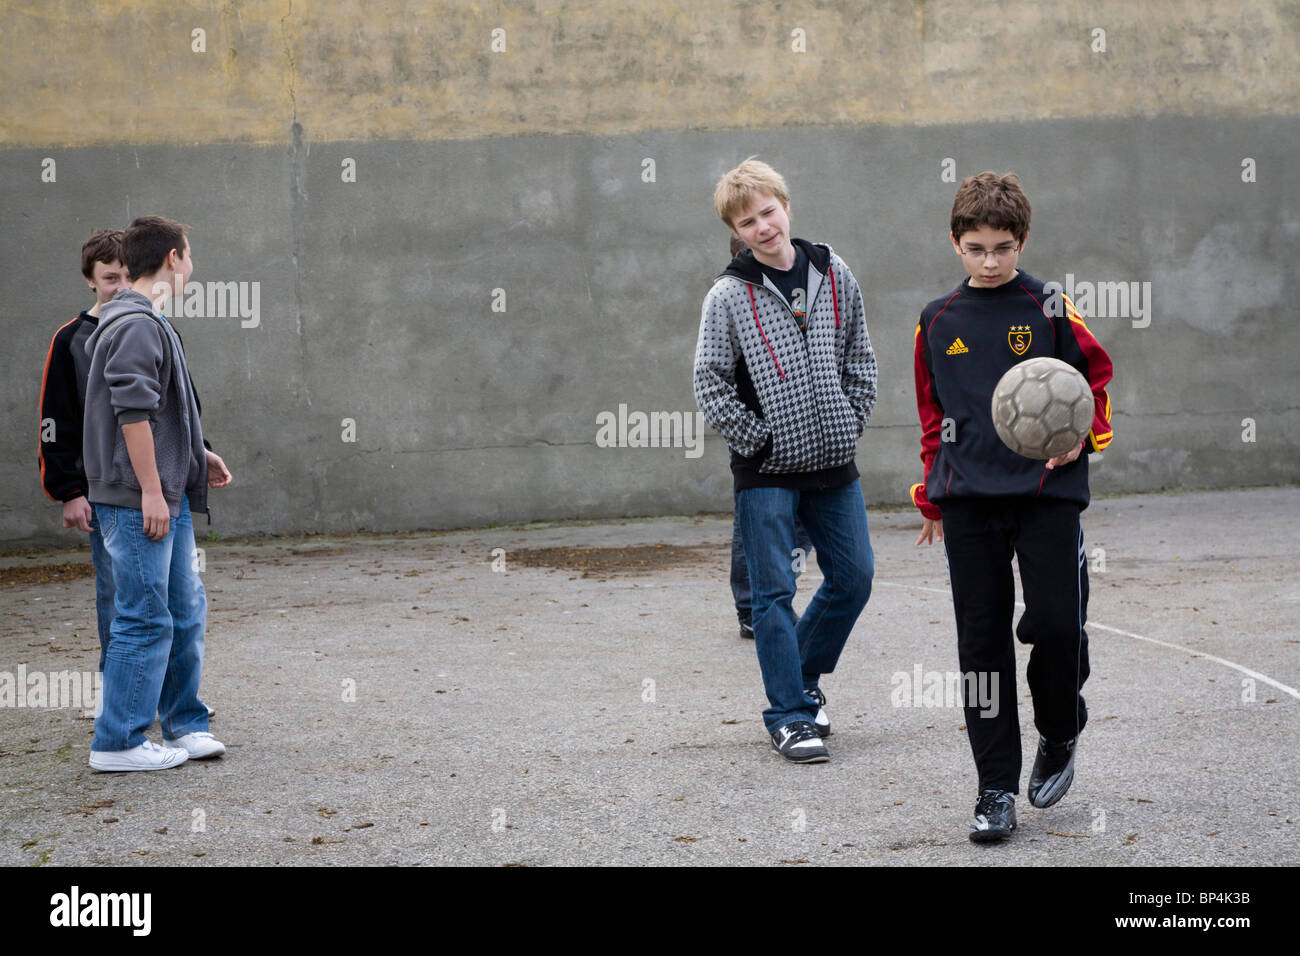 Los colegiales jugando al fútbol. Zwolen Polonia. Foto de stock